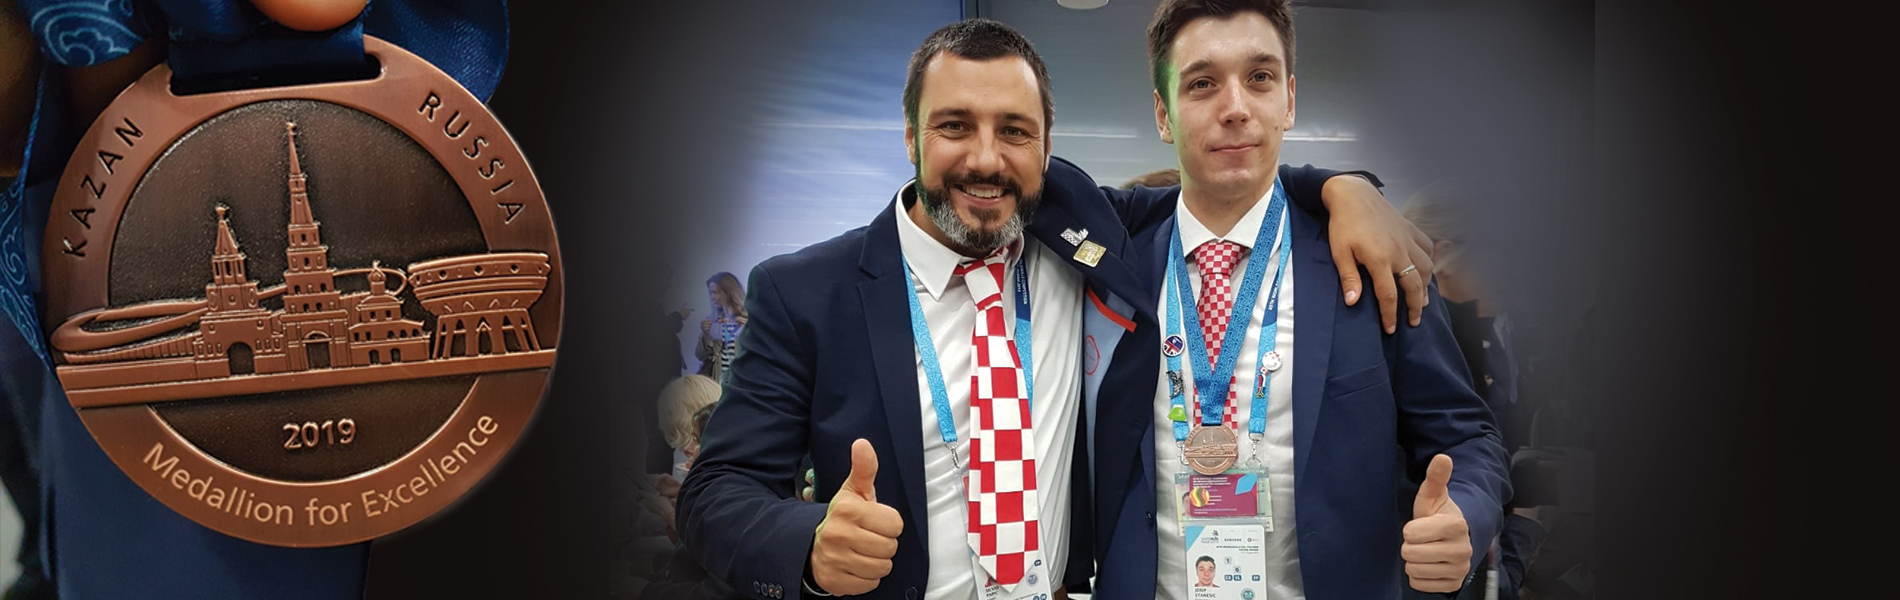 Image for Student Josip Stanešić 12. je sistemaš svijeta i dobitnik medalje izvrsnosti na natjecanju WorldSkills Kazan 2019.